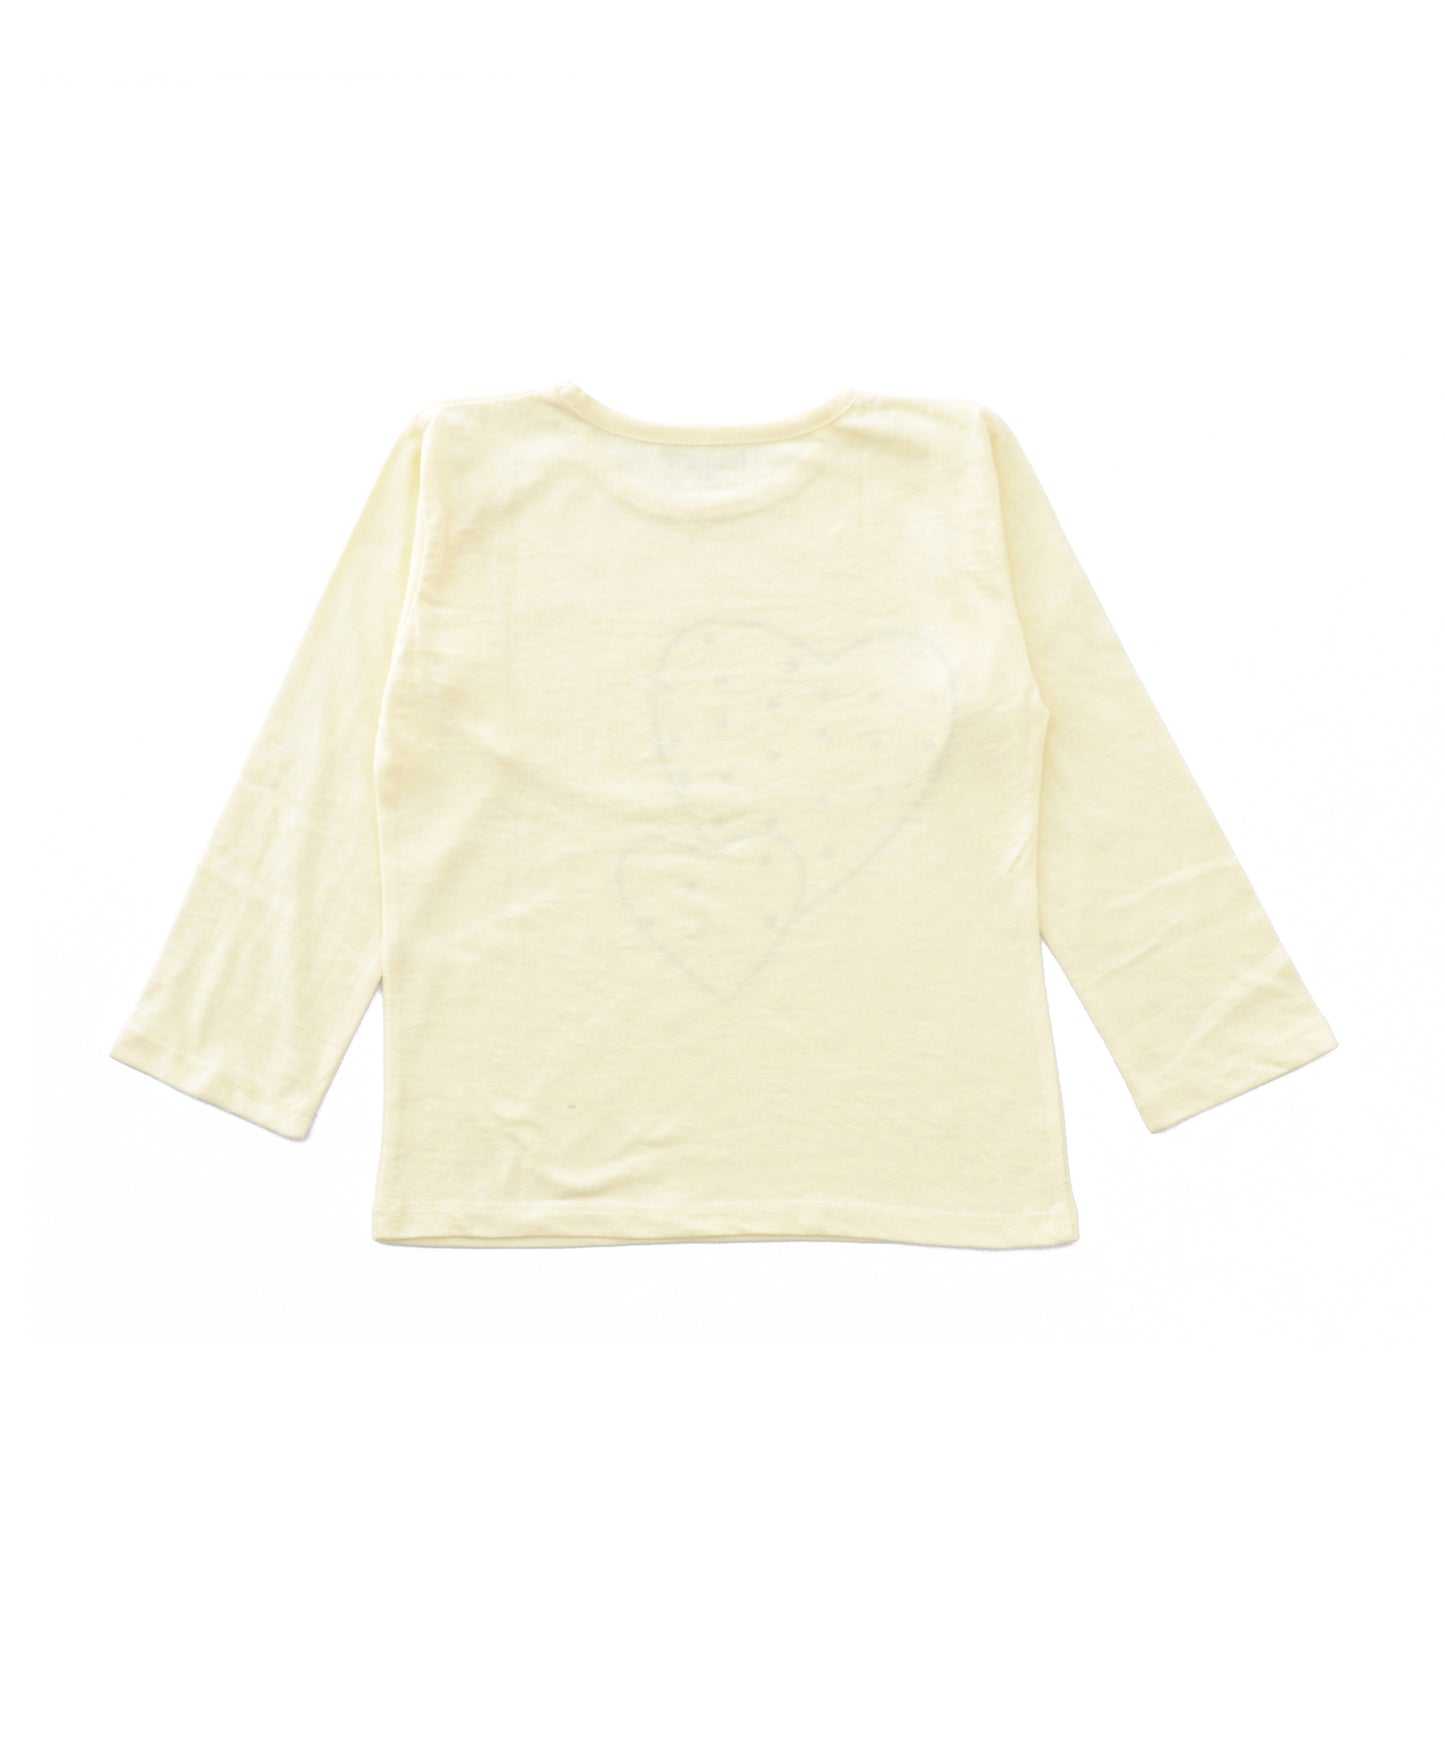 Cream Heart Printed Girls T-shirt